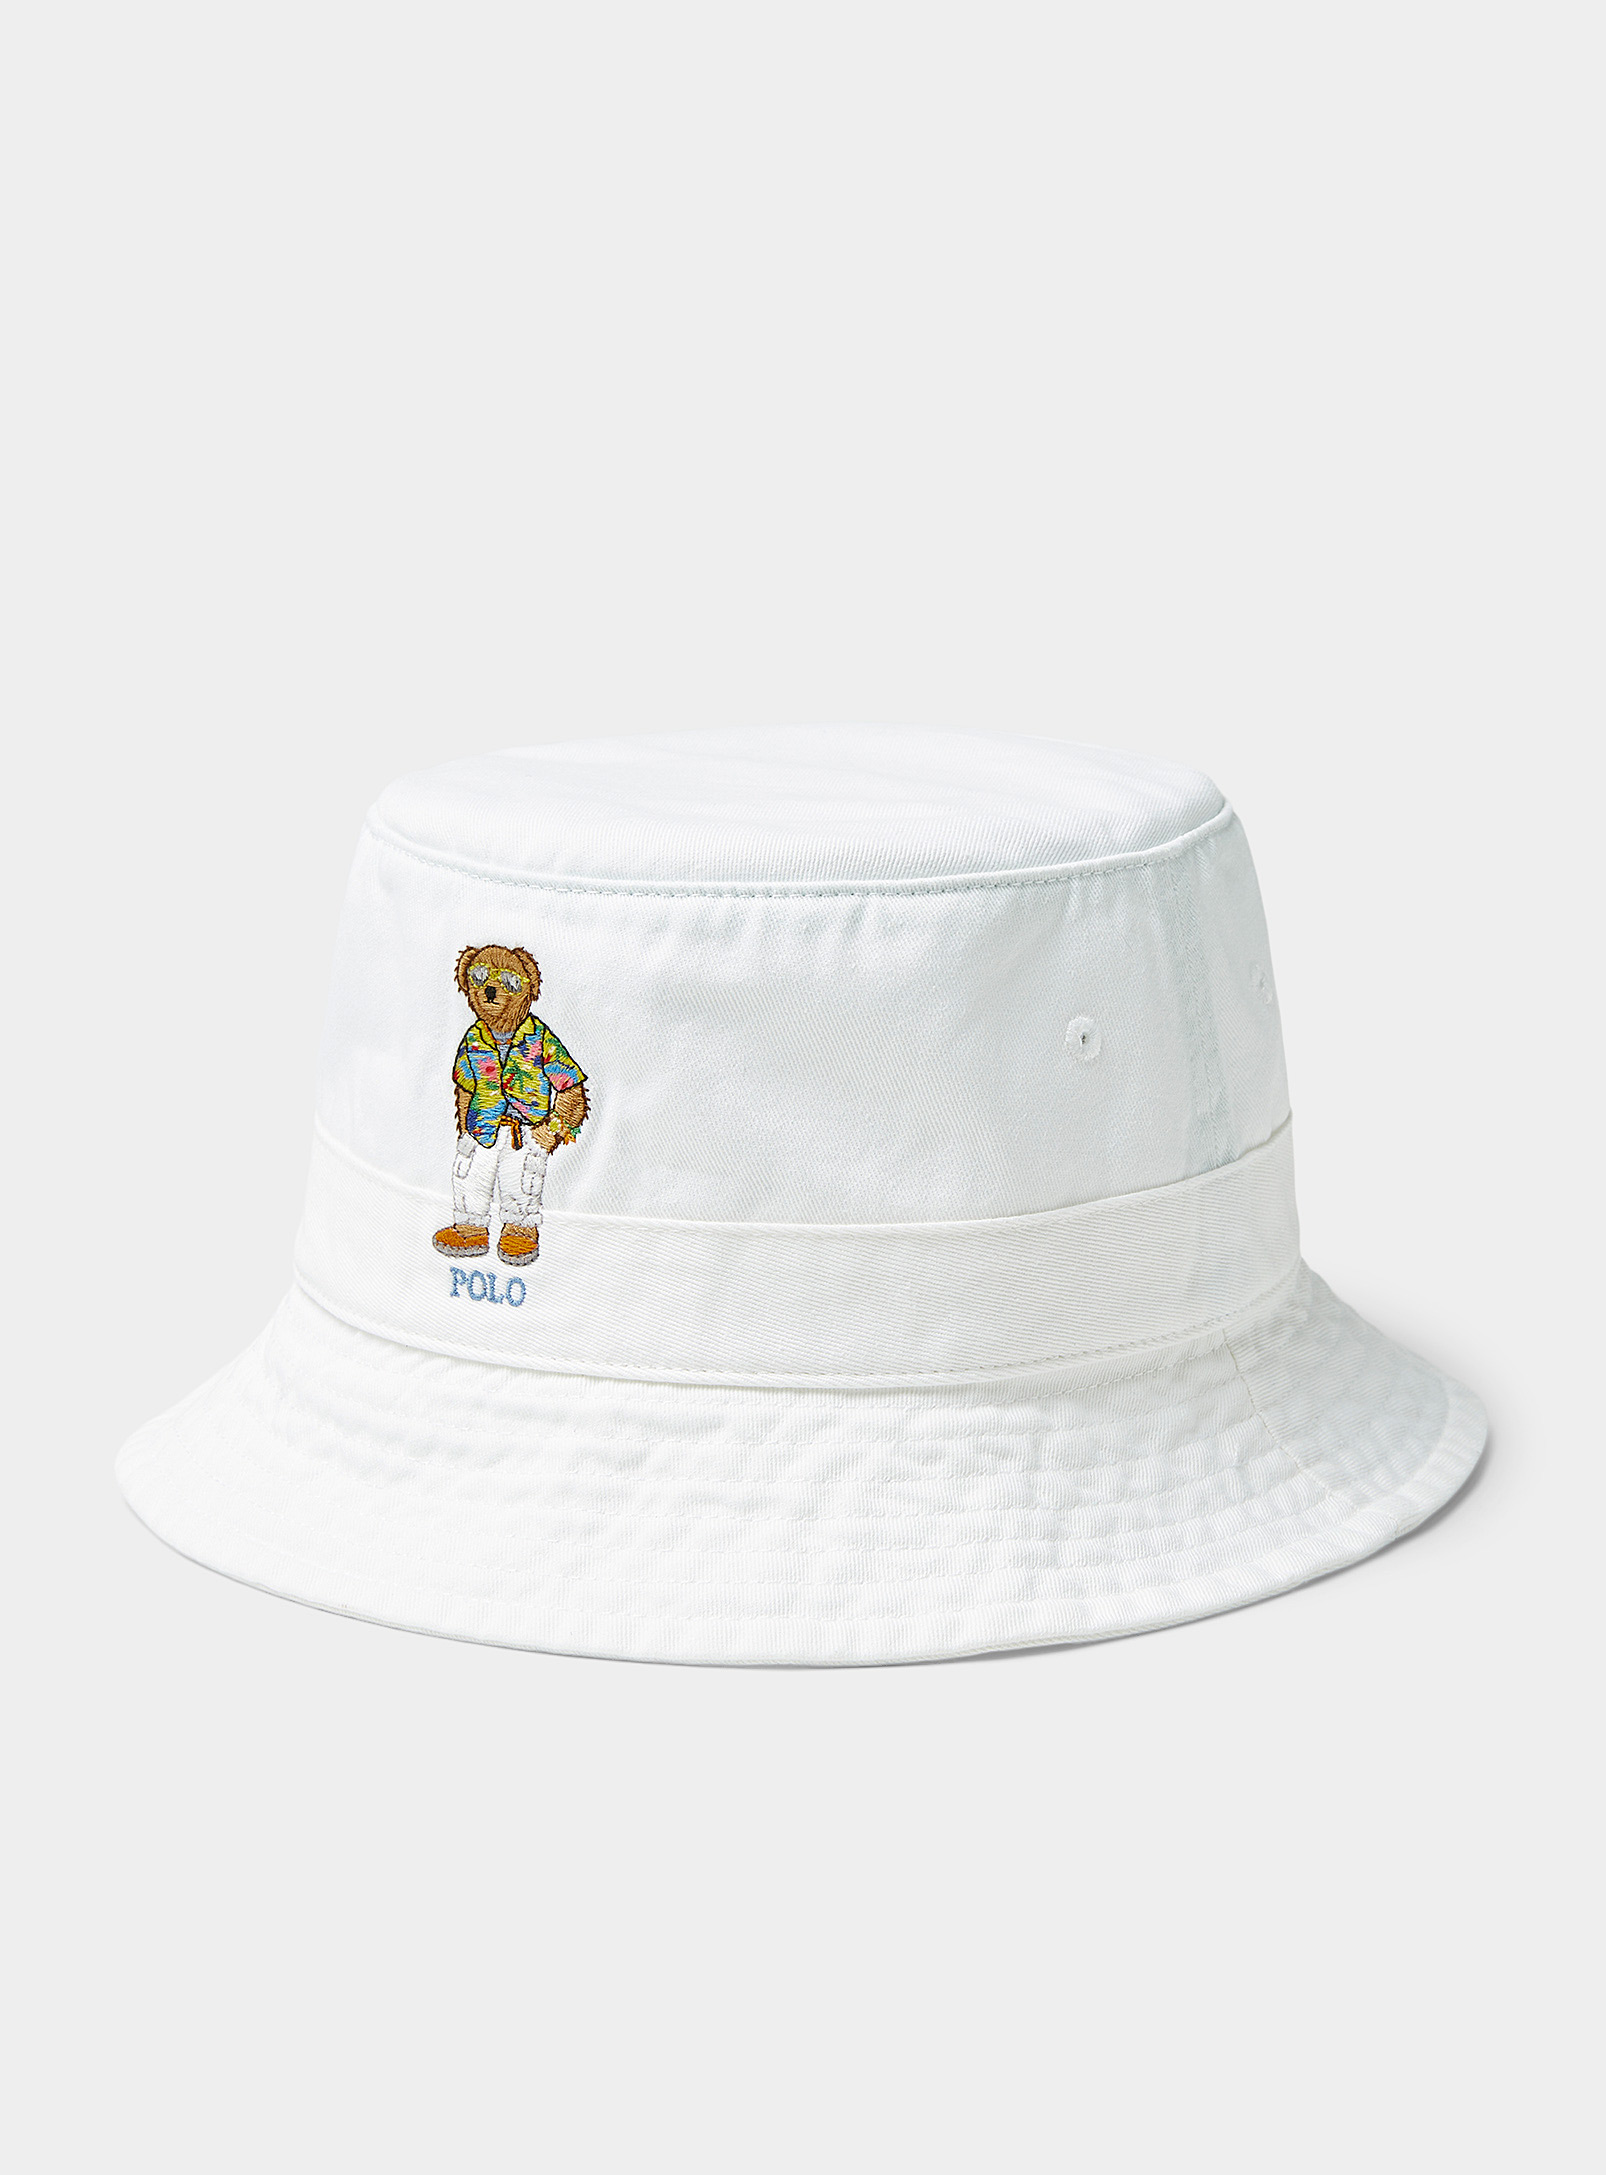 Polo Ralph Lauren - Chapeau Le Bob ourson vacancier